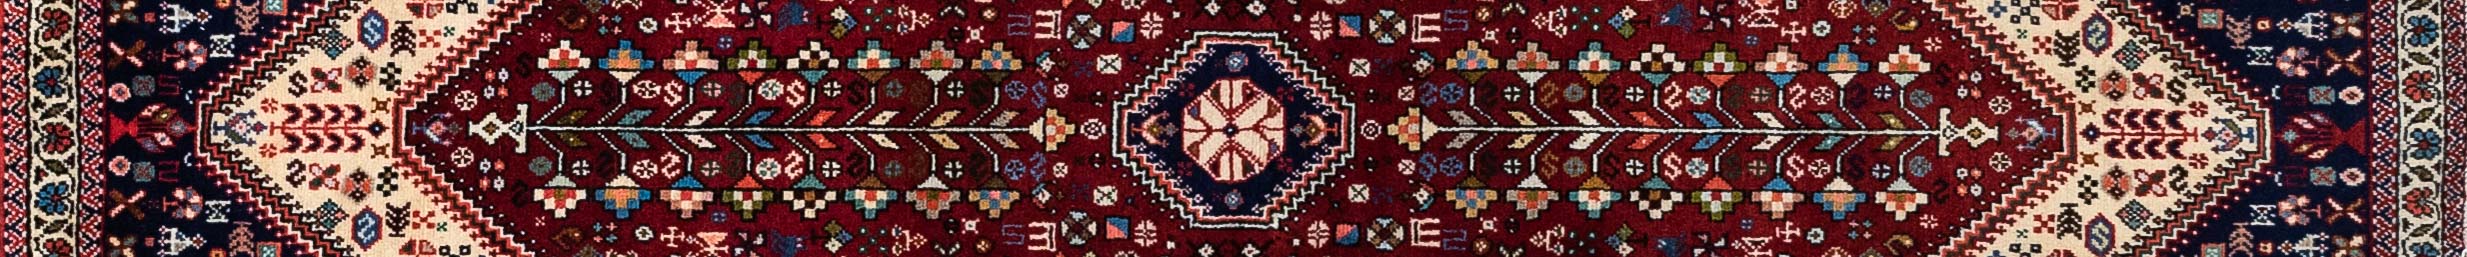 Abadeh Persian Carpet Rug N1Carpet Canada Montreal Tapis Persan 950